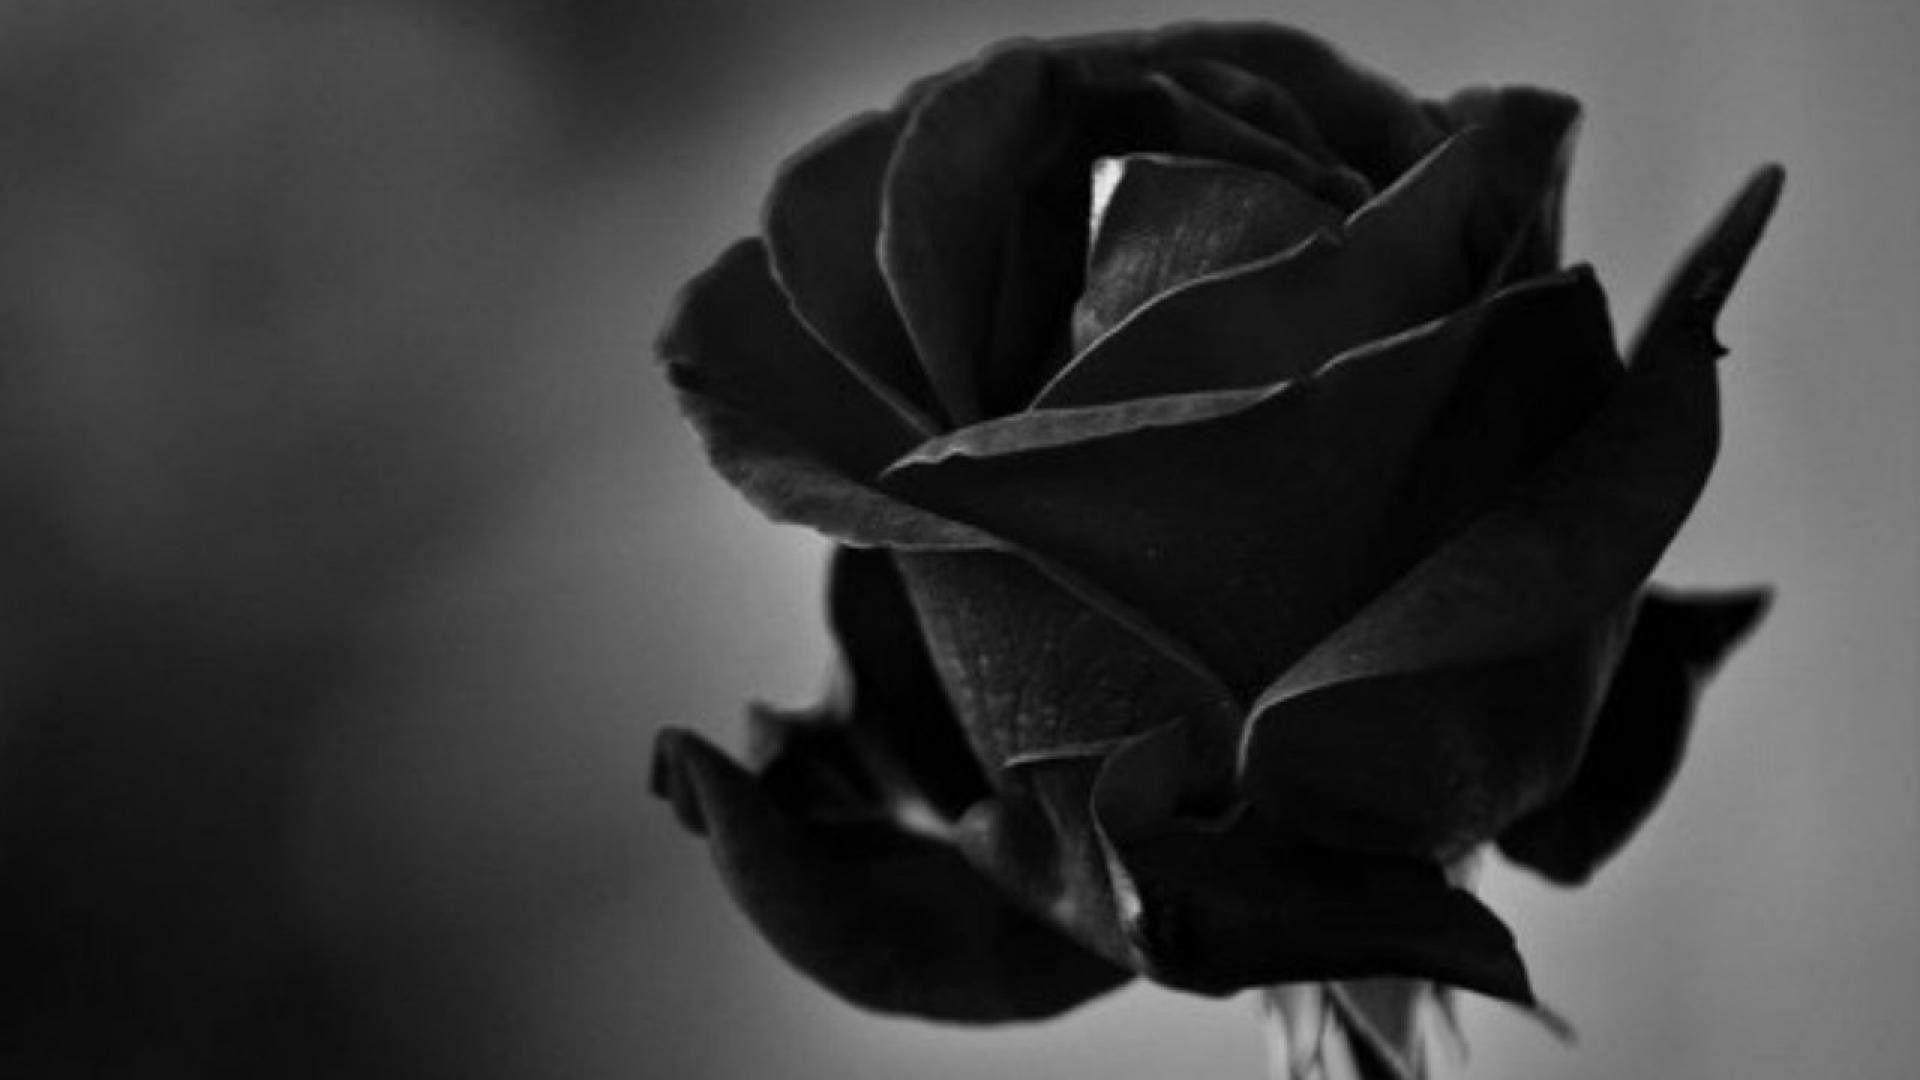 1920x1080 Hình nền hoa hồng đen trắng